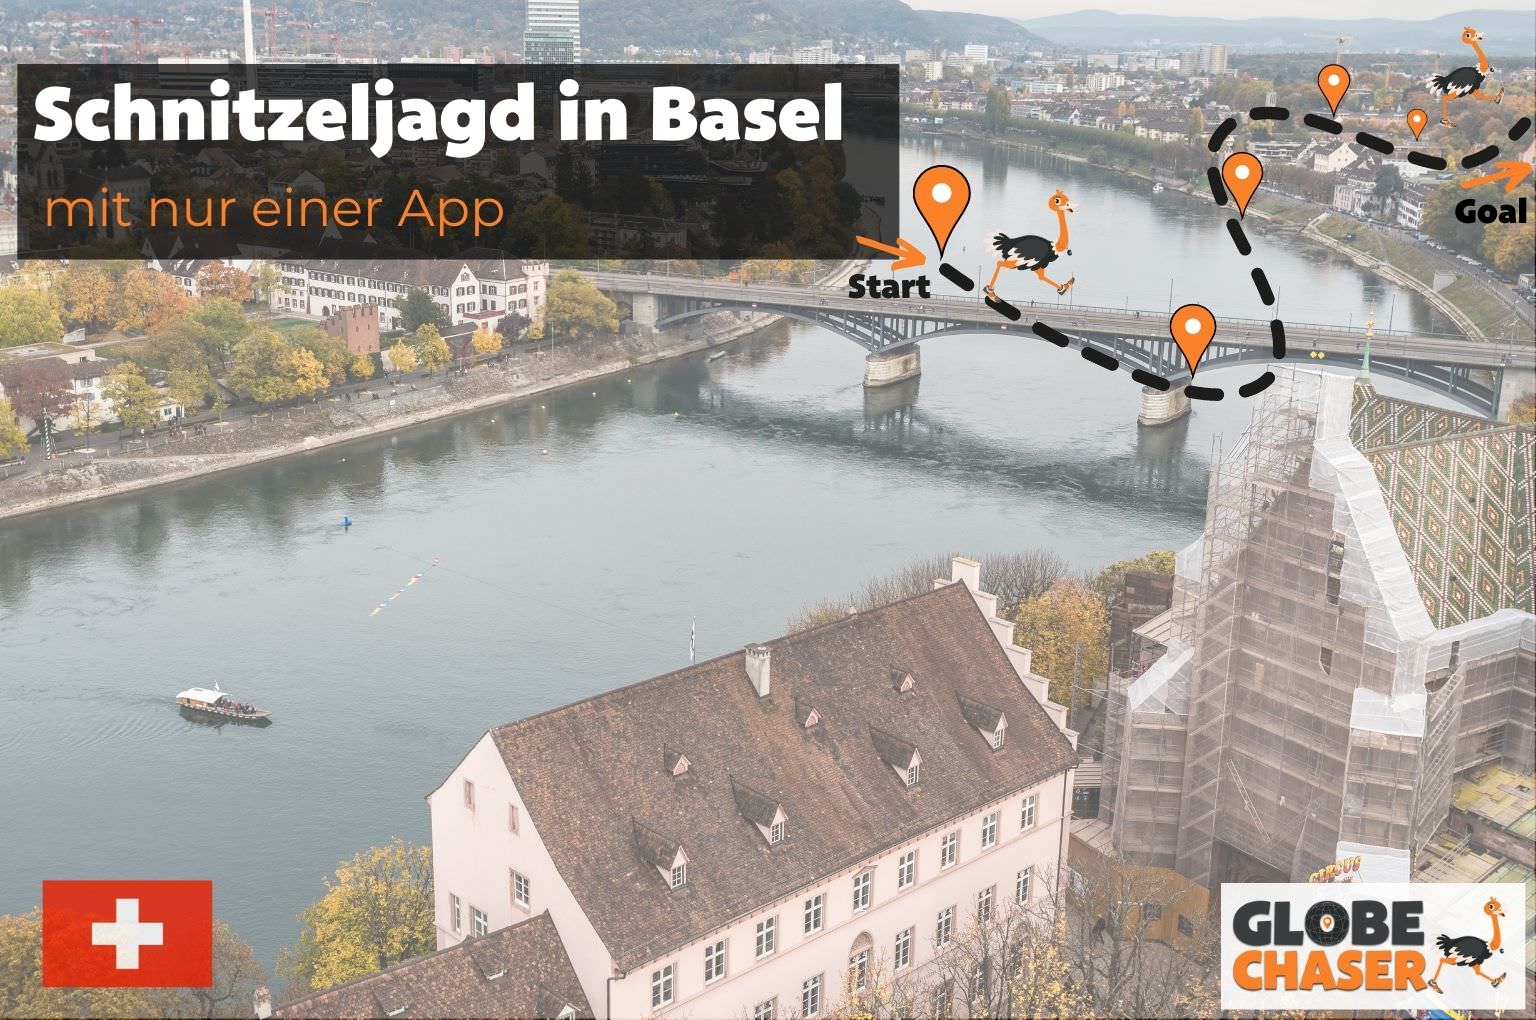 Schnitzeljagd in Basel mit App - Globe Chaser Erlebnisse Schweiz